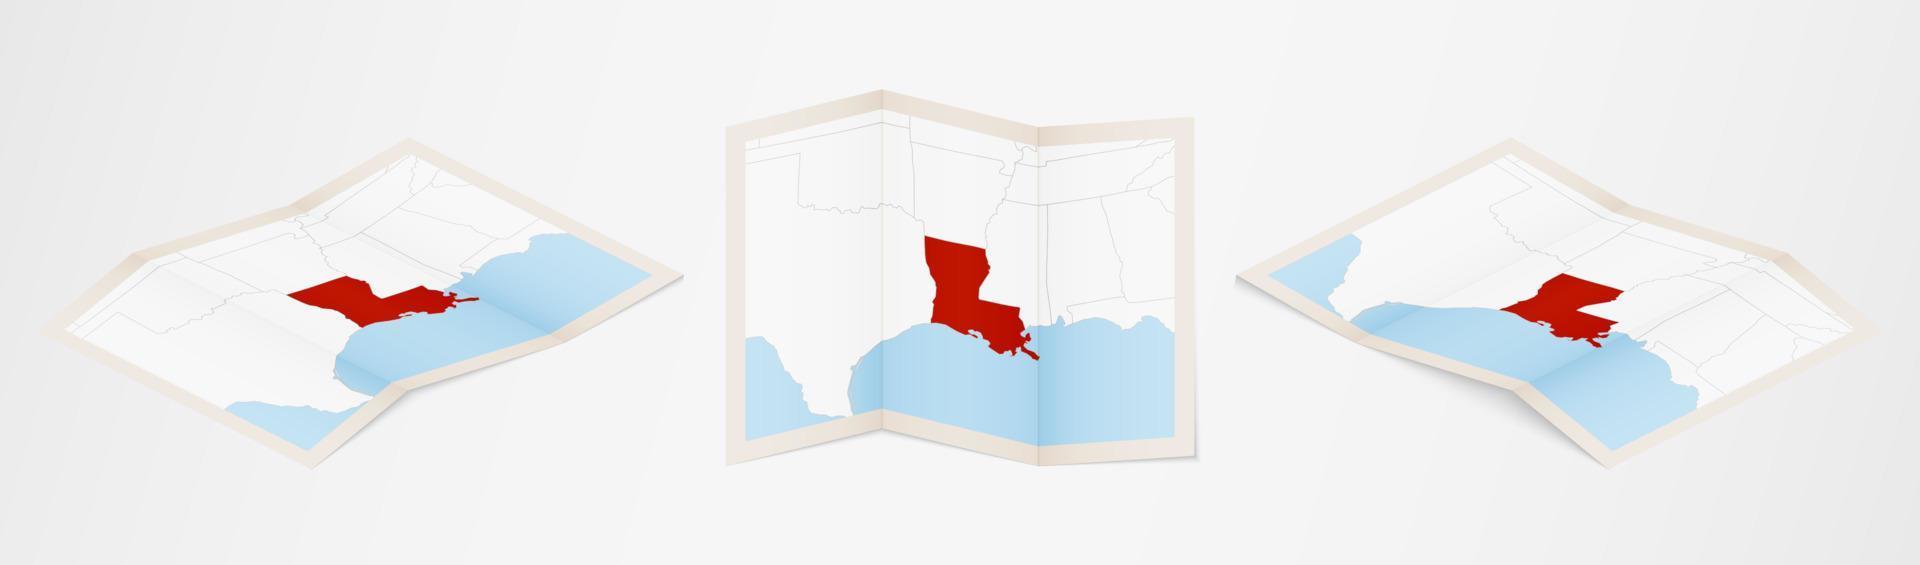 gevouwen kaart van Louisiana in drie verschillend versies. vector